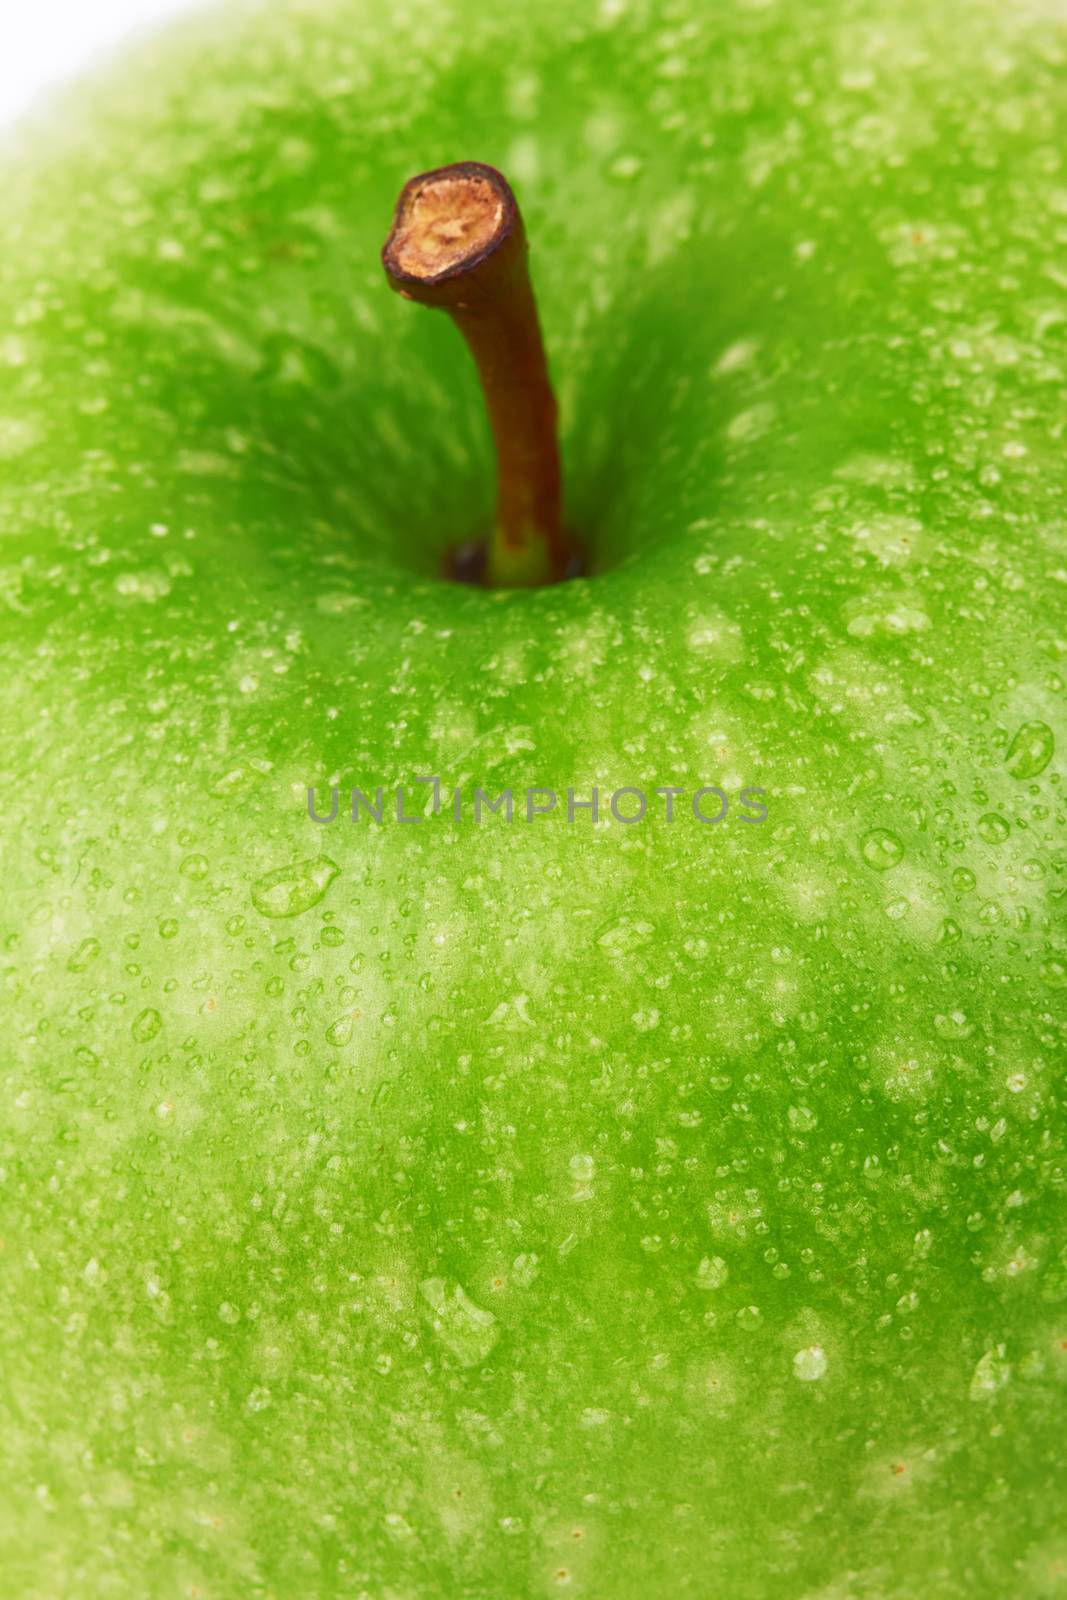 apple by pioneer111